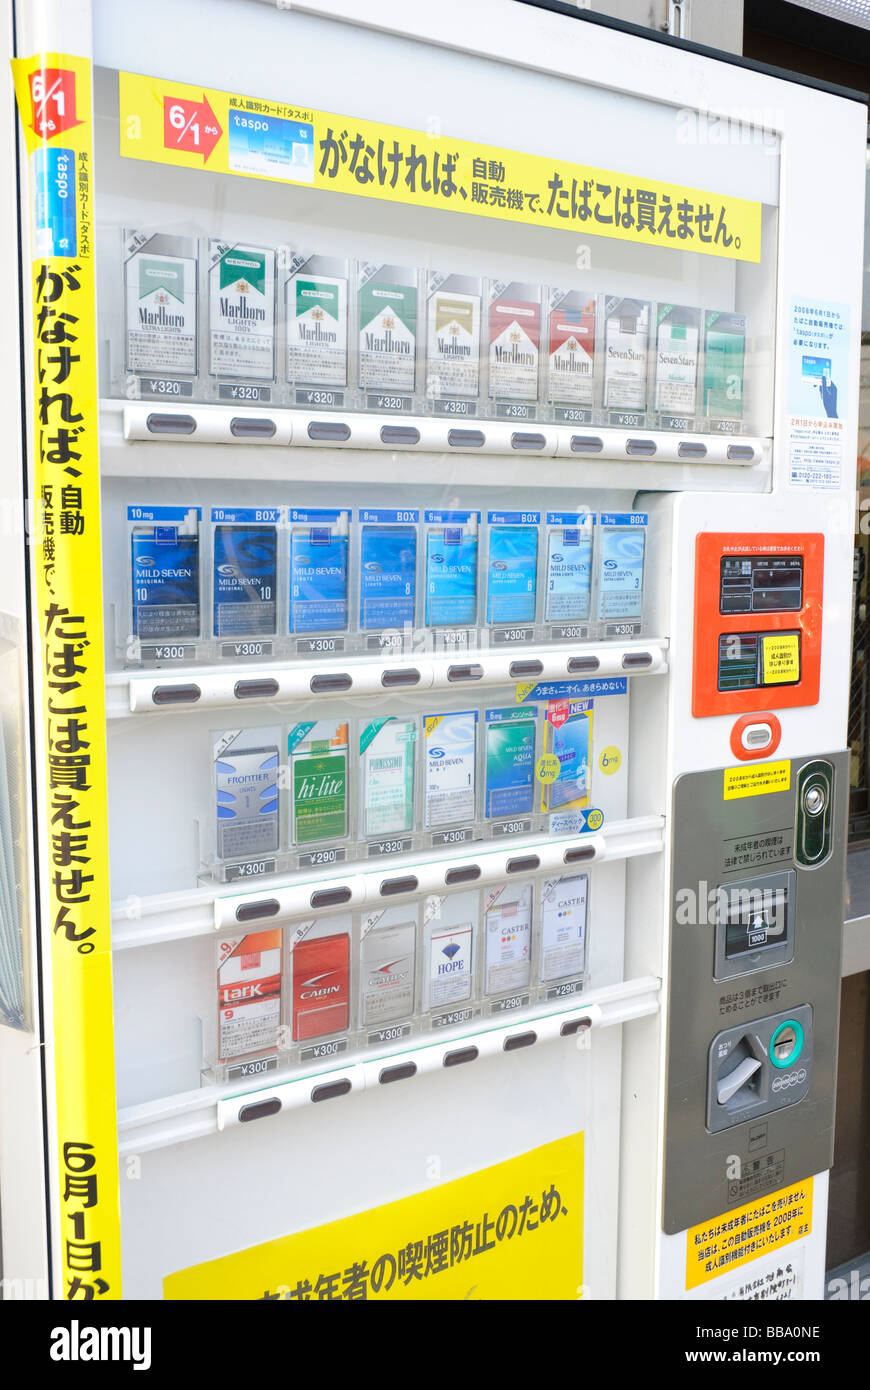 Distributeur automatique de cigarettes dans une rue d'Ibaraki-shi, une banlieue d'Osaka. Ces distributeurs automatiques sont communs dans tout le Japon. Banque D'Images